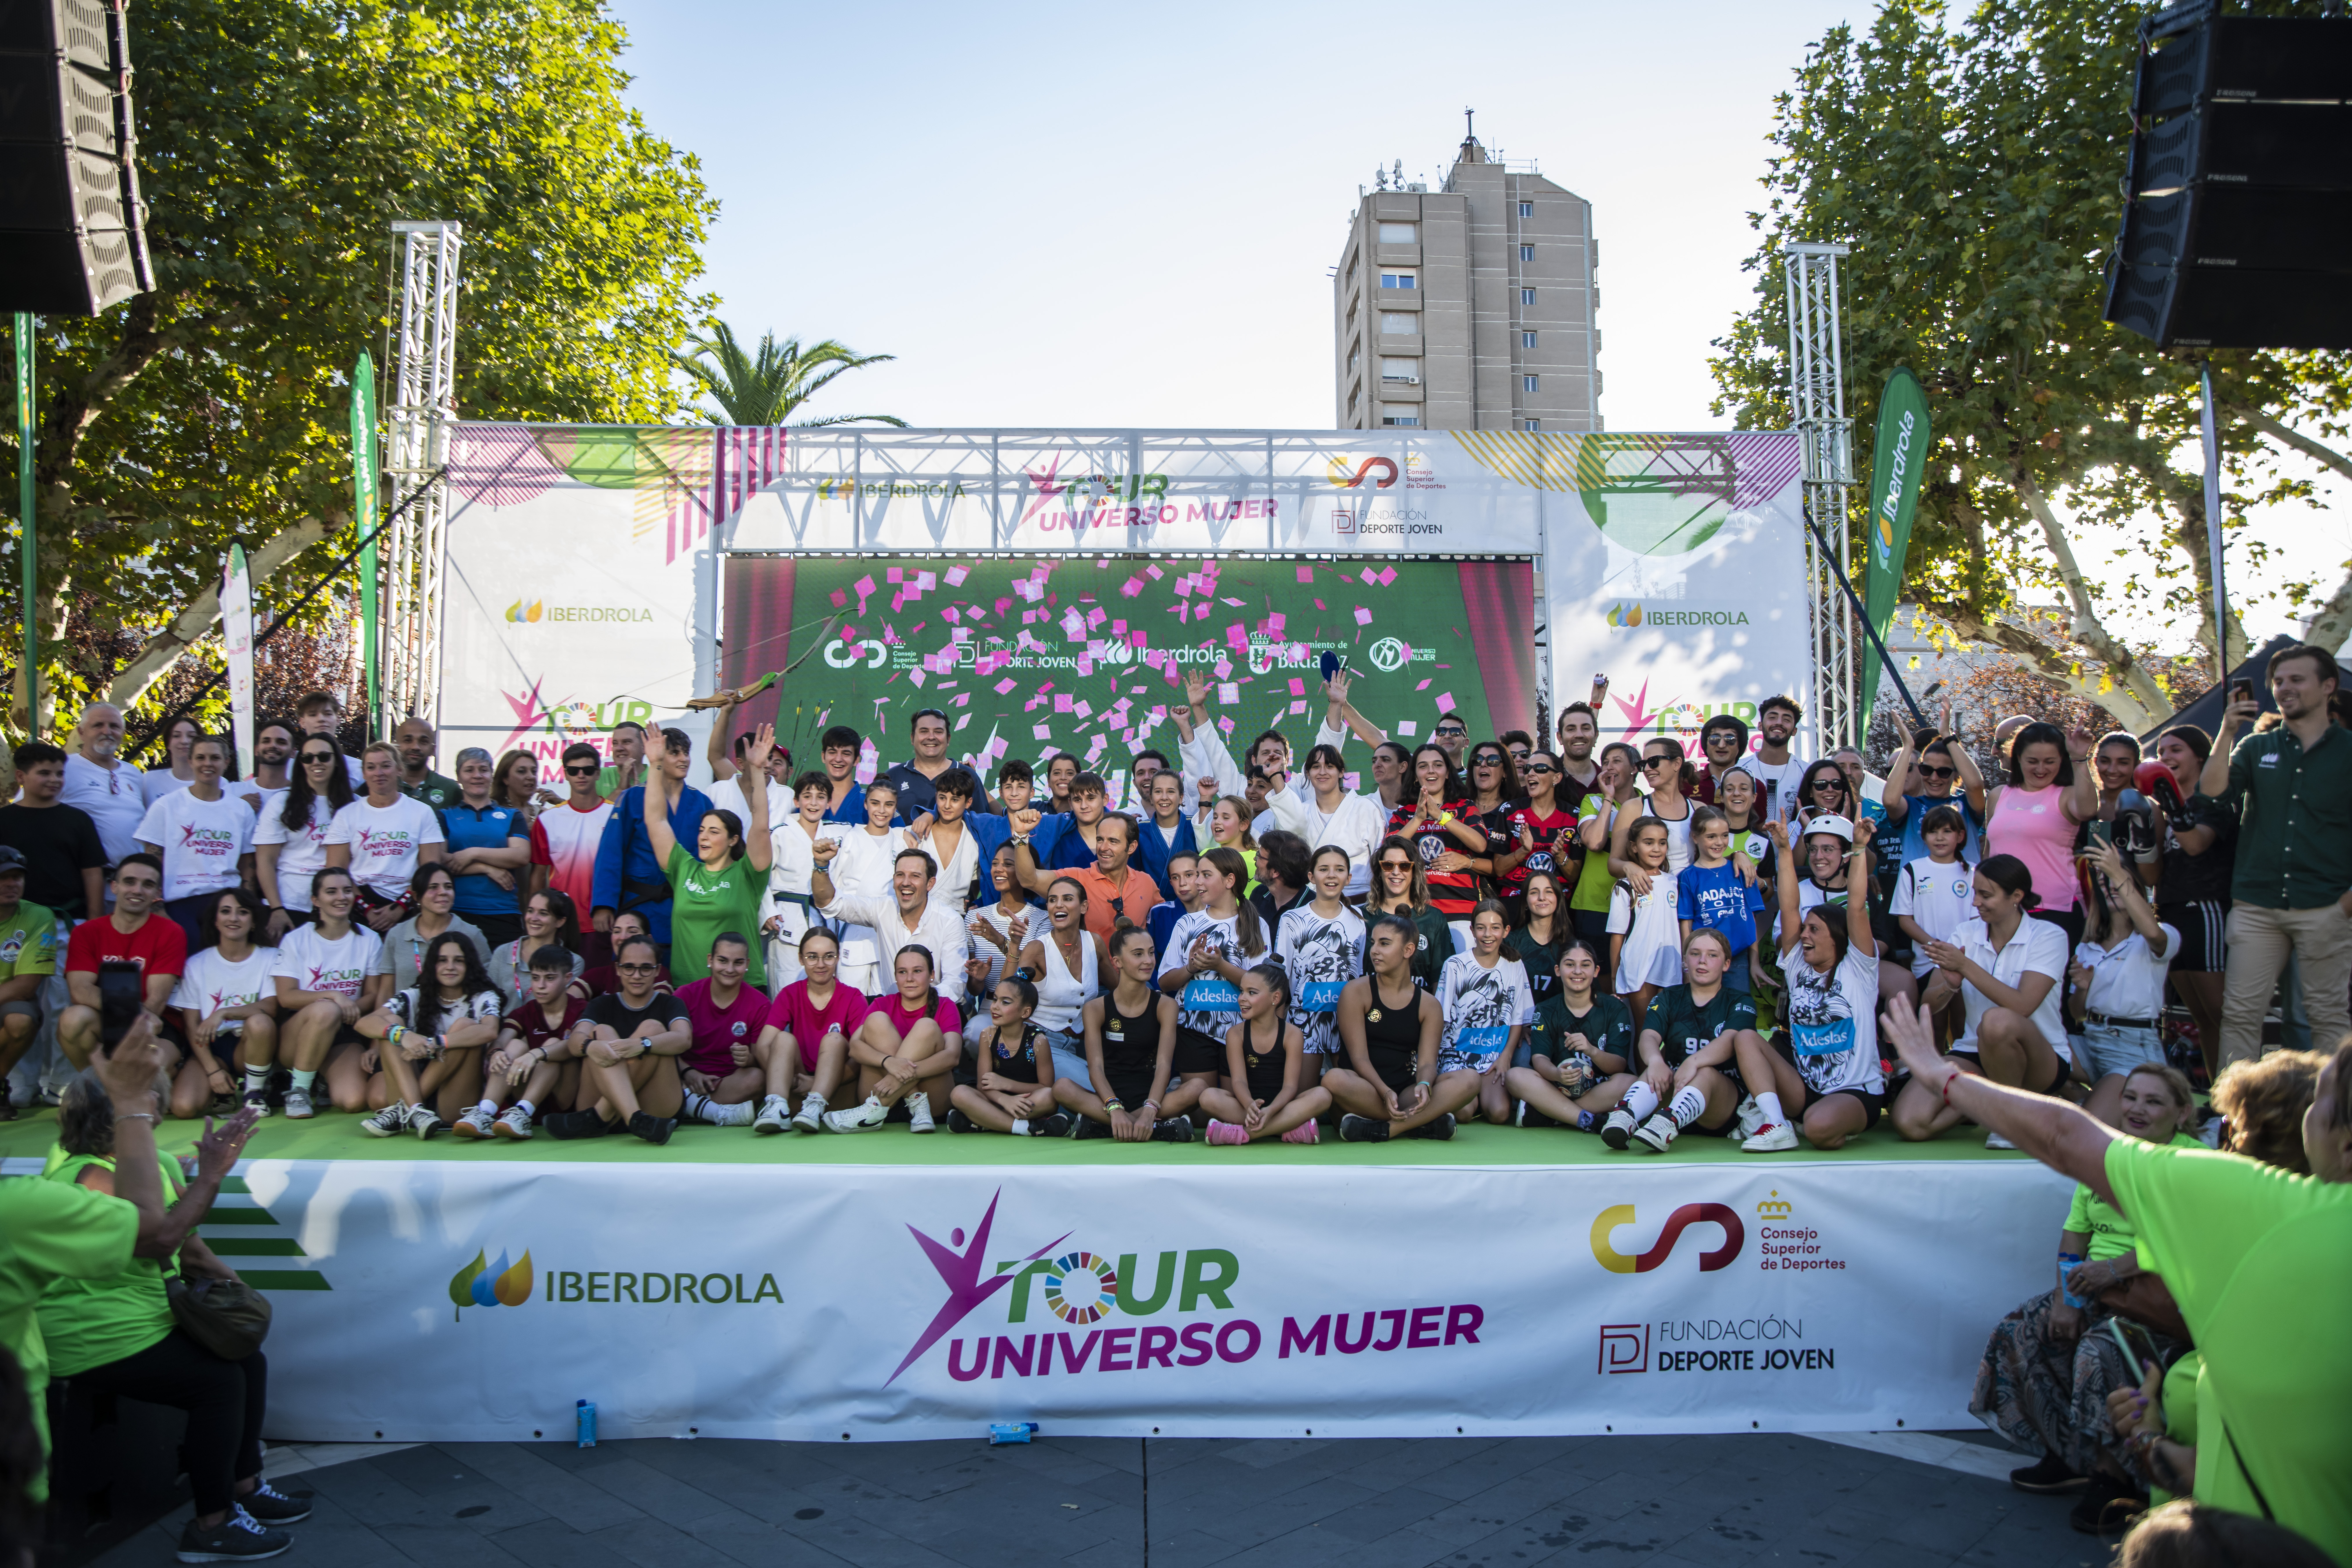 El Tour Universo Mujer celebrado en esta ocasión en Badajoz, arranca con su foto inicial de grupo en la que aparecen los voluntarios de las más de 32 federaciones participantes.